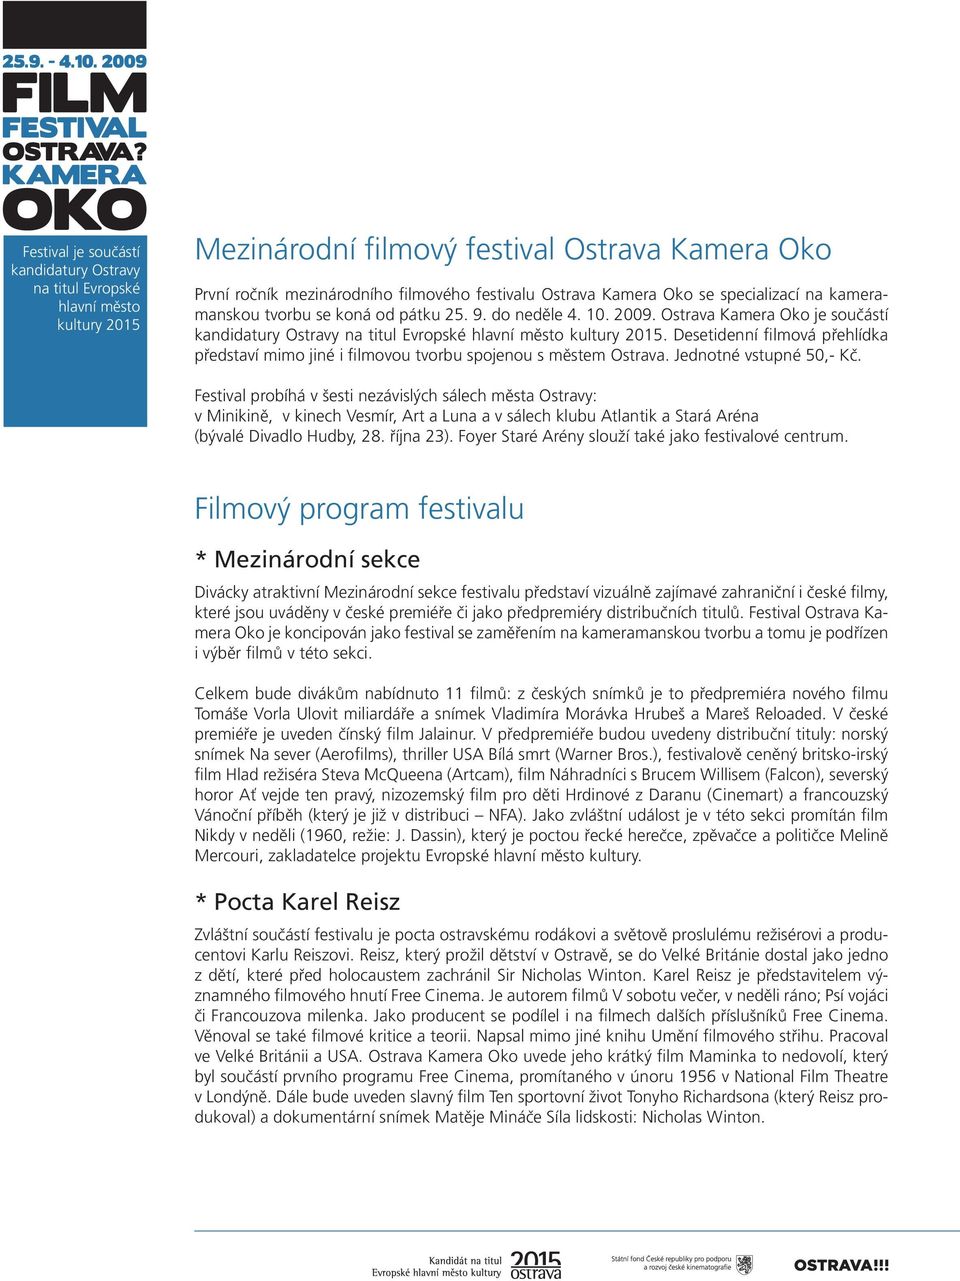 Festival probíhá v šesti nezávislých sálech města Ostravy: v Minikině, v kinech Vesmír, Art a Luna a v sálech klubu Atlantik a Stará Aréna (bývalé Divadlo Hudby, 28. října 23).